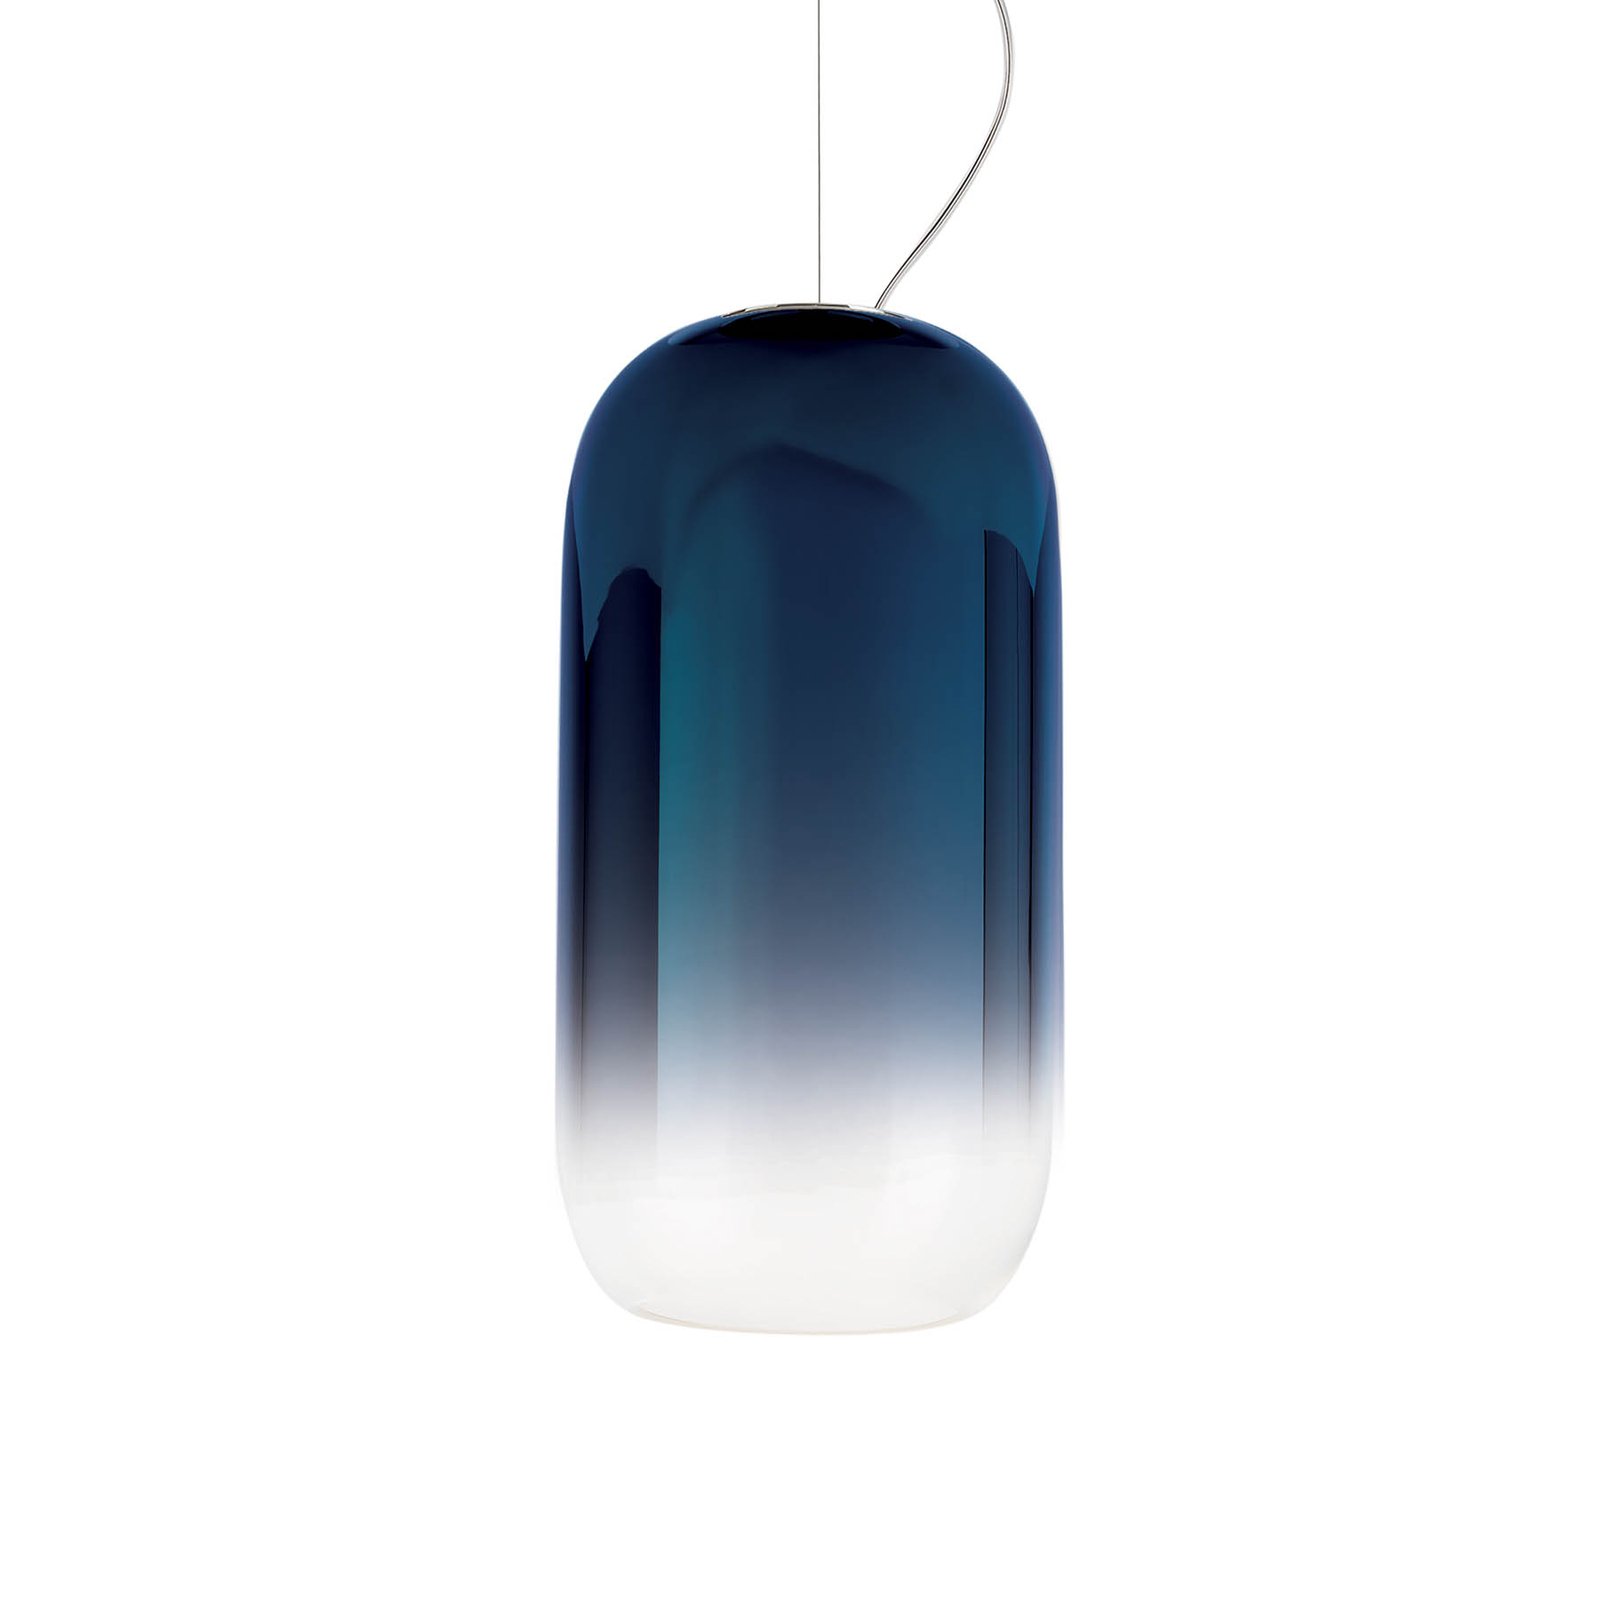 Artemide Gople hanglamp, blauw/zwart